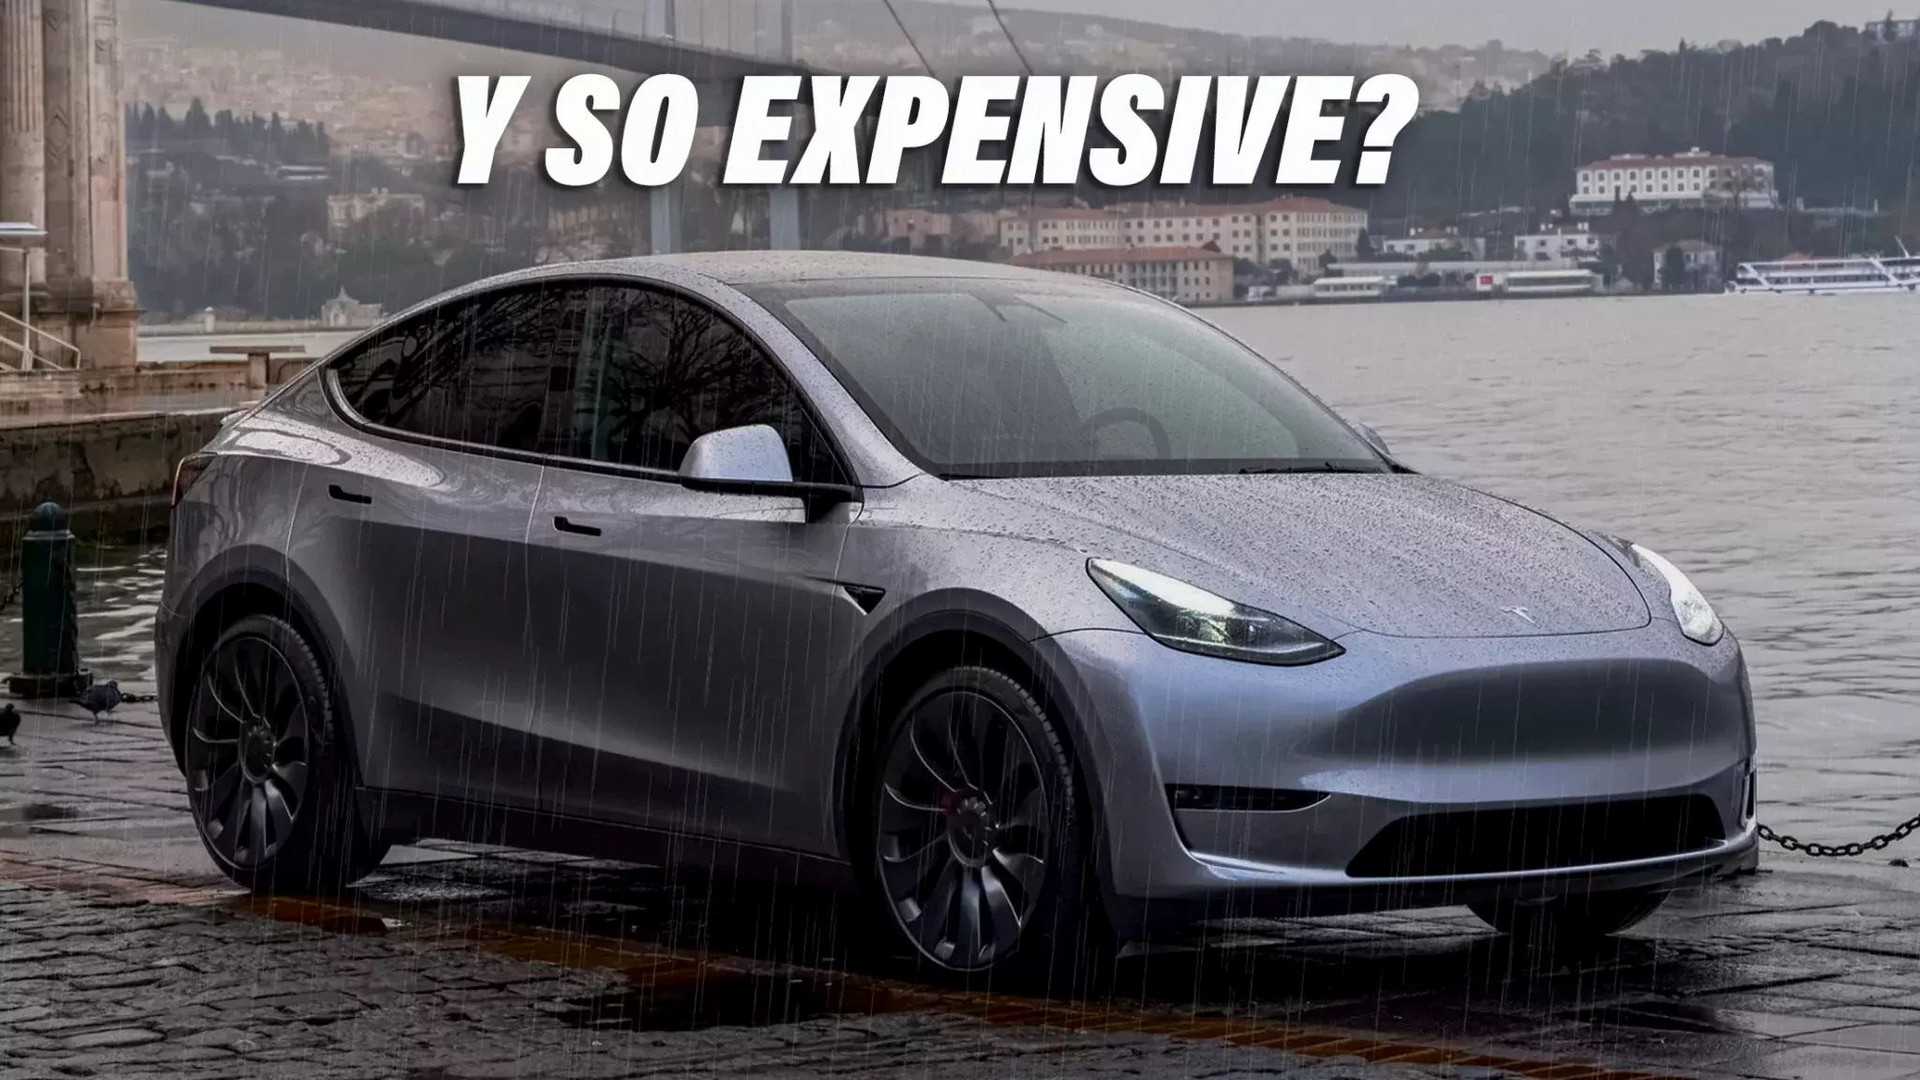 Chỉ ‘lái xe dưới mưa’, chủ xe Tesla phát hoảng khi nhận hóa đơn sửa chữa hơn 500 triệu đồng: Đại lý báo ‘không phải lỗi người dùng’ nhưng tiền vẫn phải trả đủ - Ảnh 1.